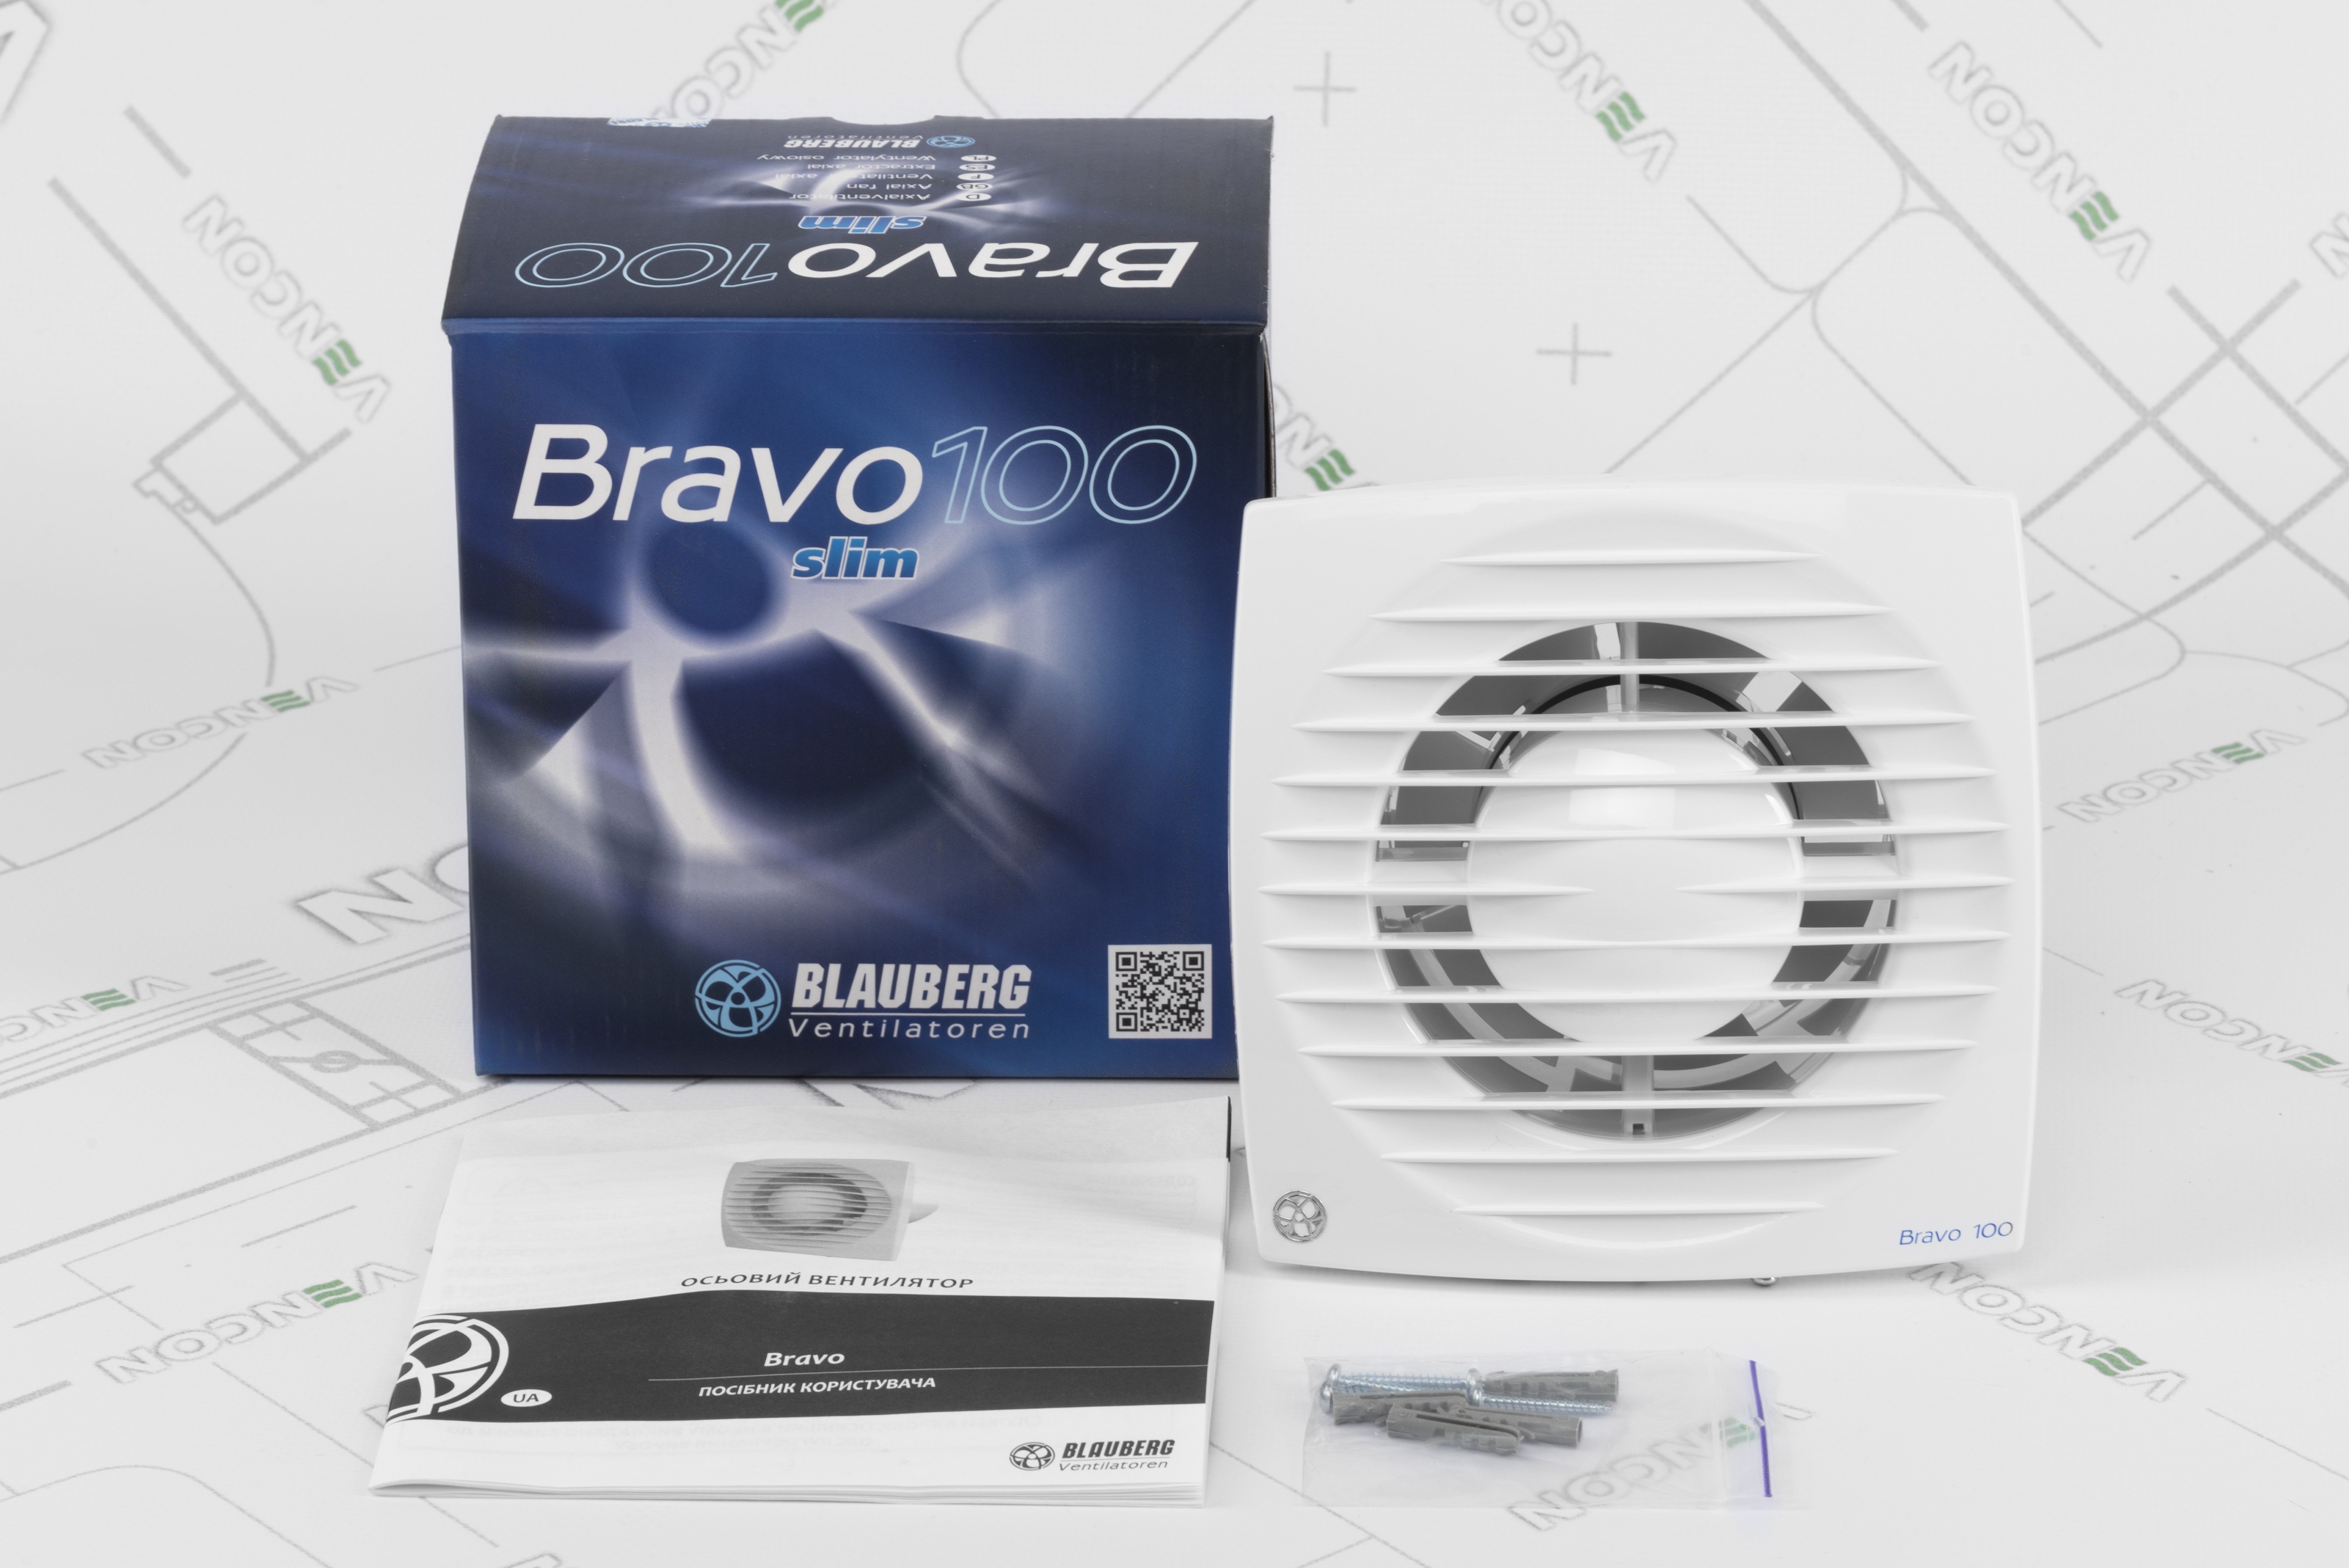 Вытяжной вентилятор Blauberg Bravo 100 характеристики - фотография 7